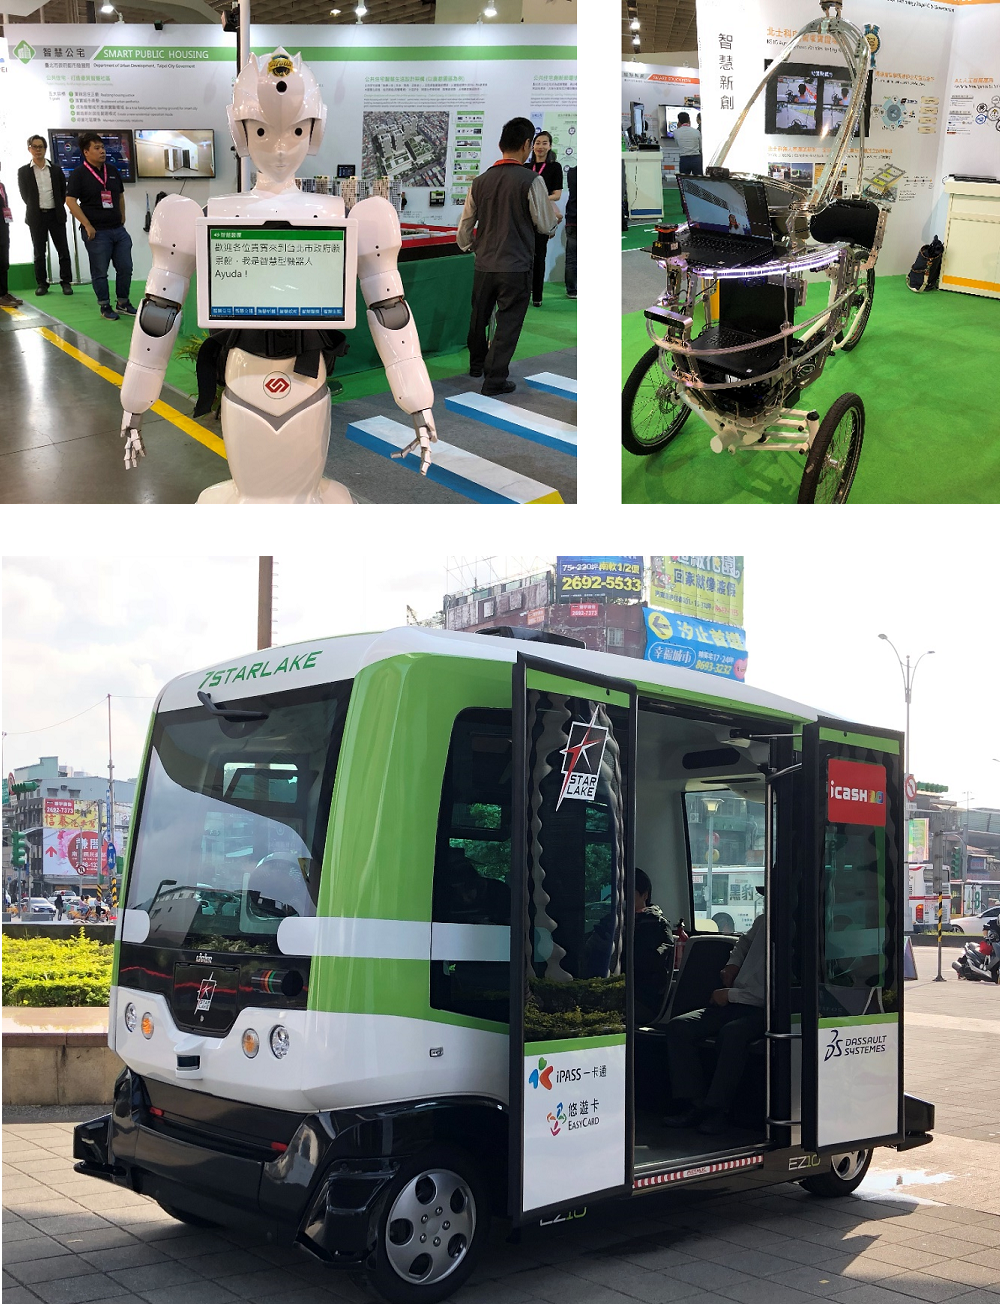 2018智慧城市展臺北願景館展出項目─AI智能接待機器人（左上）、電動自駕三輪車（右上）、無人自駕小巴(下)